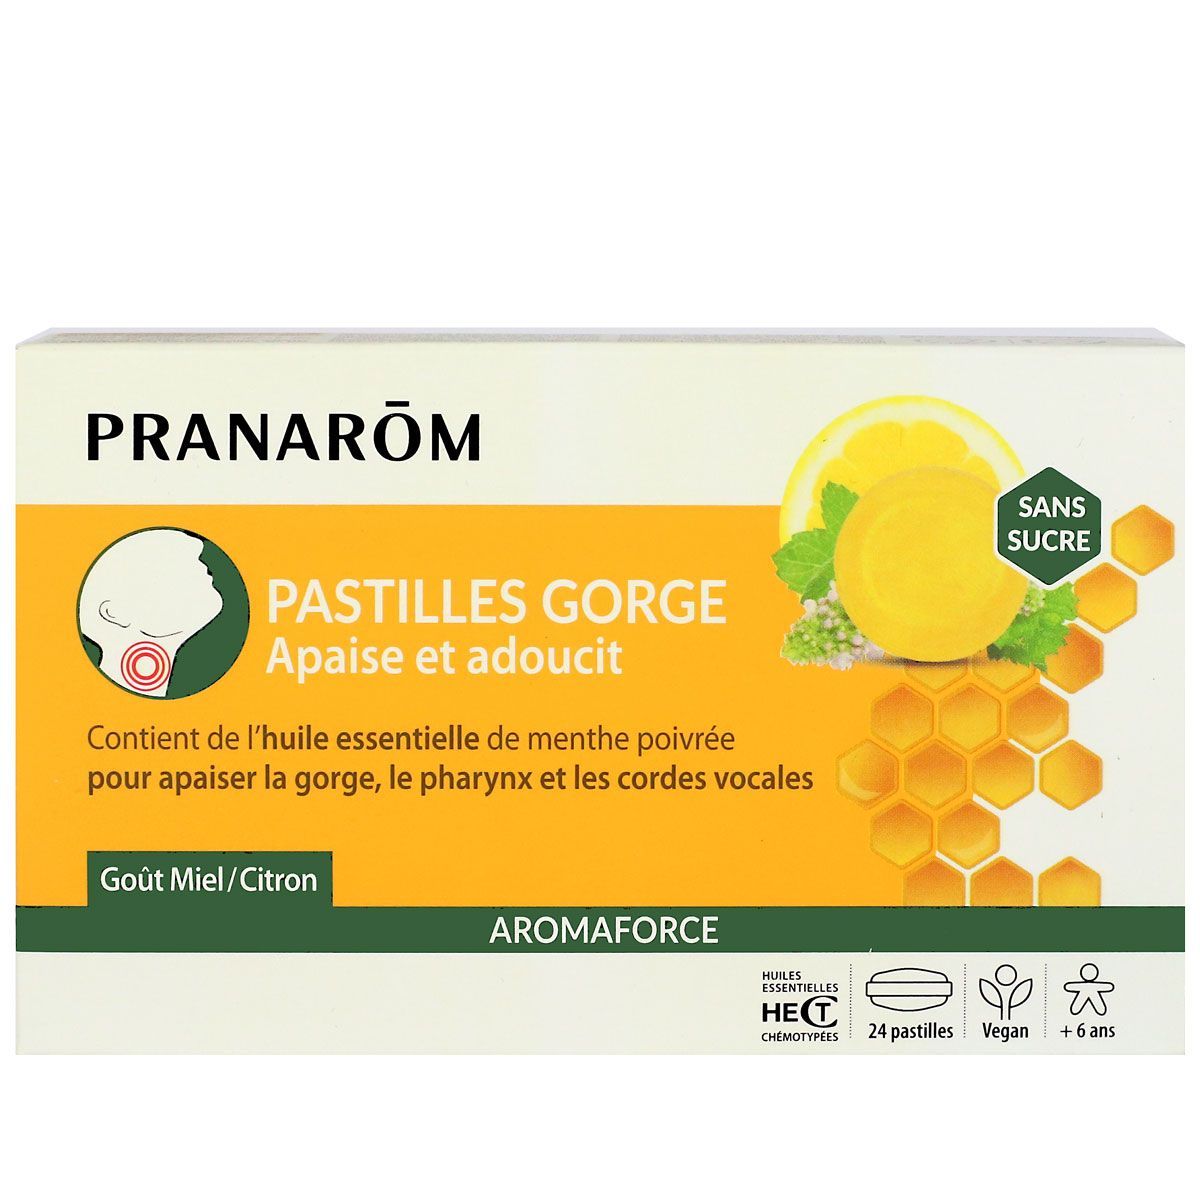 Pranarom Aromaforce pastilles gorge miel-citron est préconisé